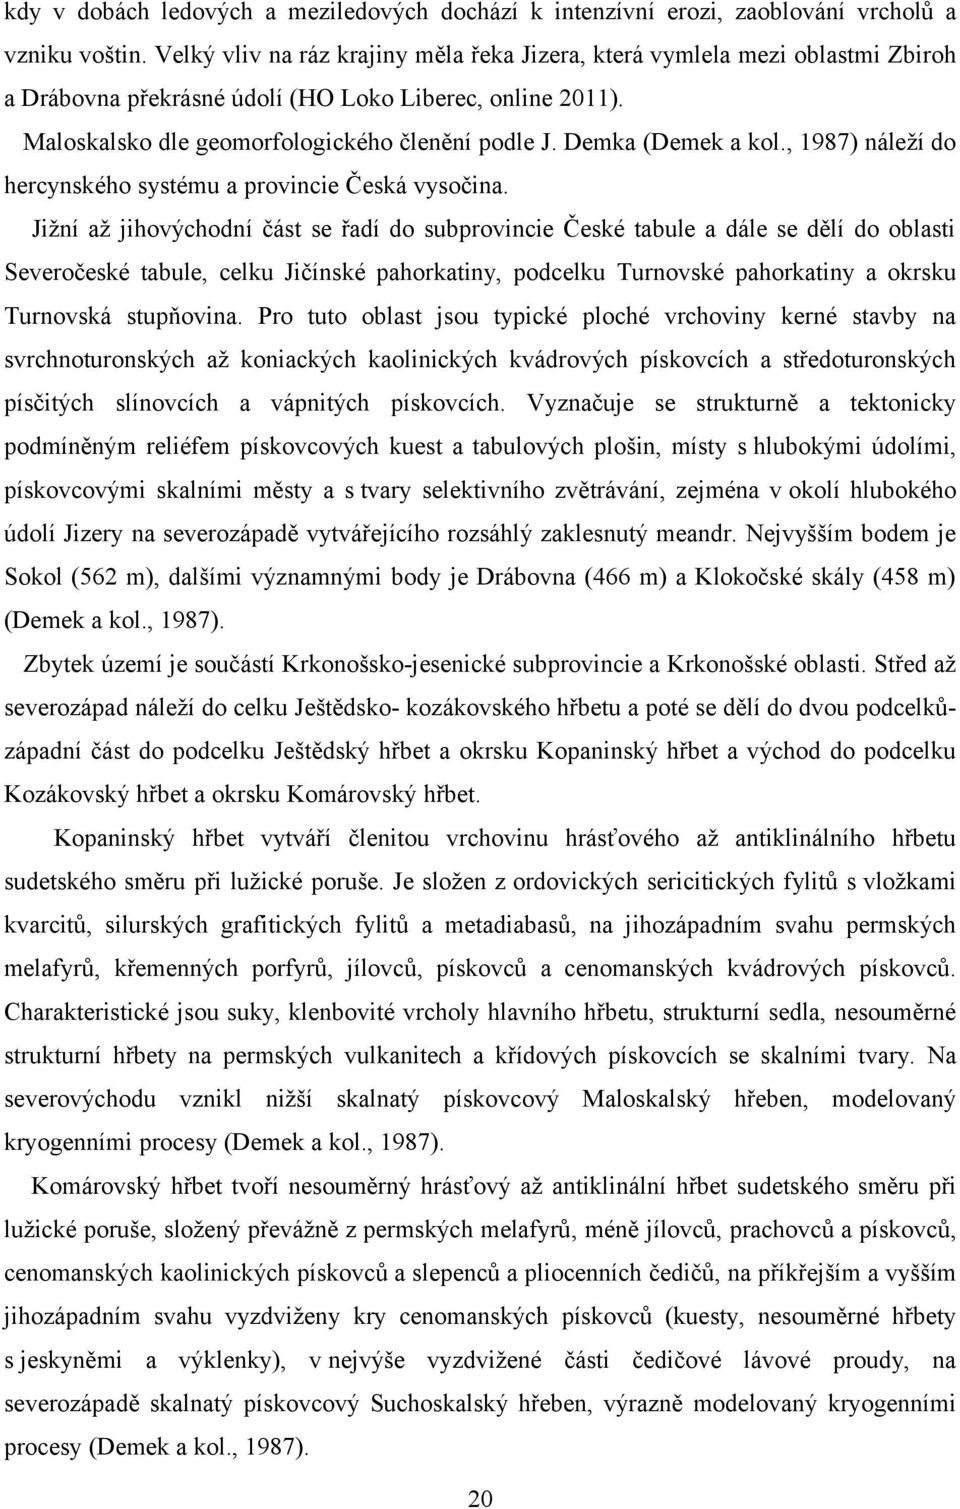 Demka (Demek a kol., 1987) náleží do hercynského systému a provincie Česká vysočina.